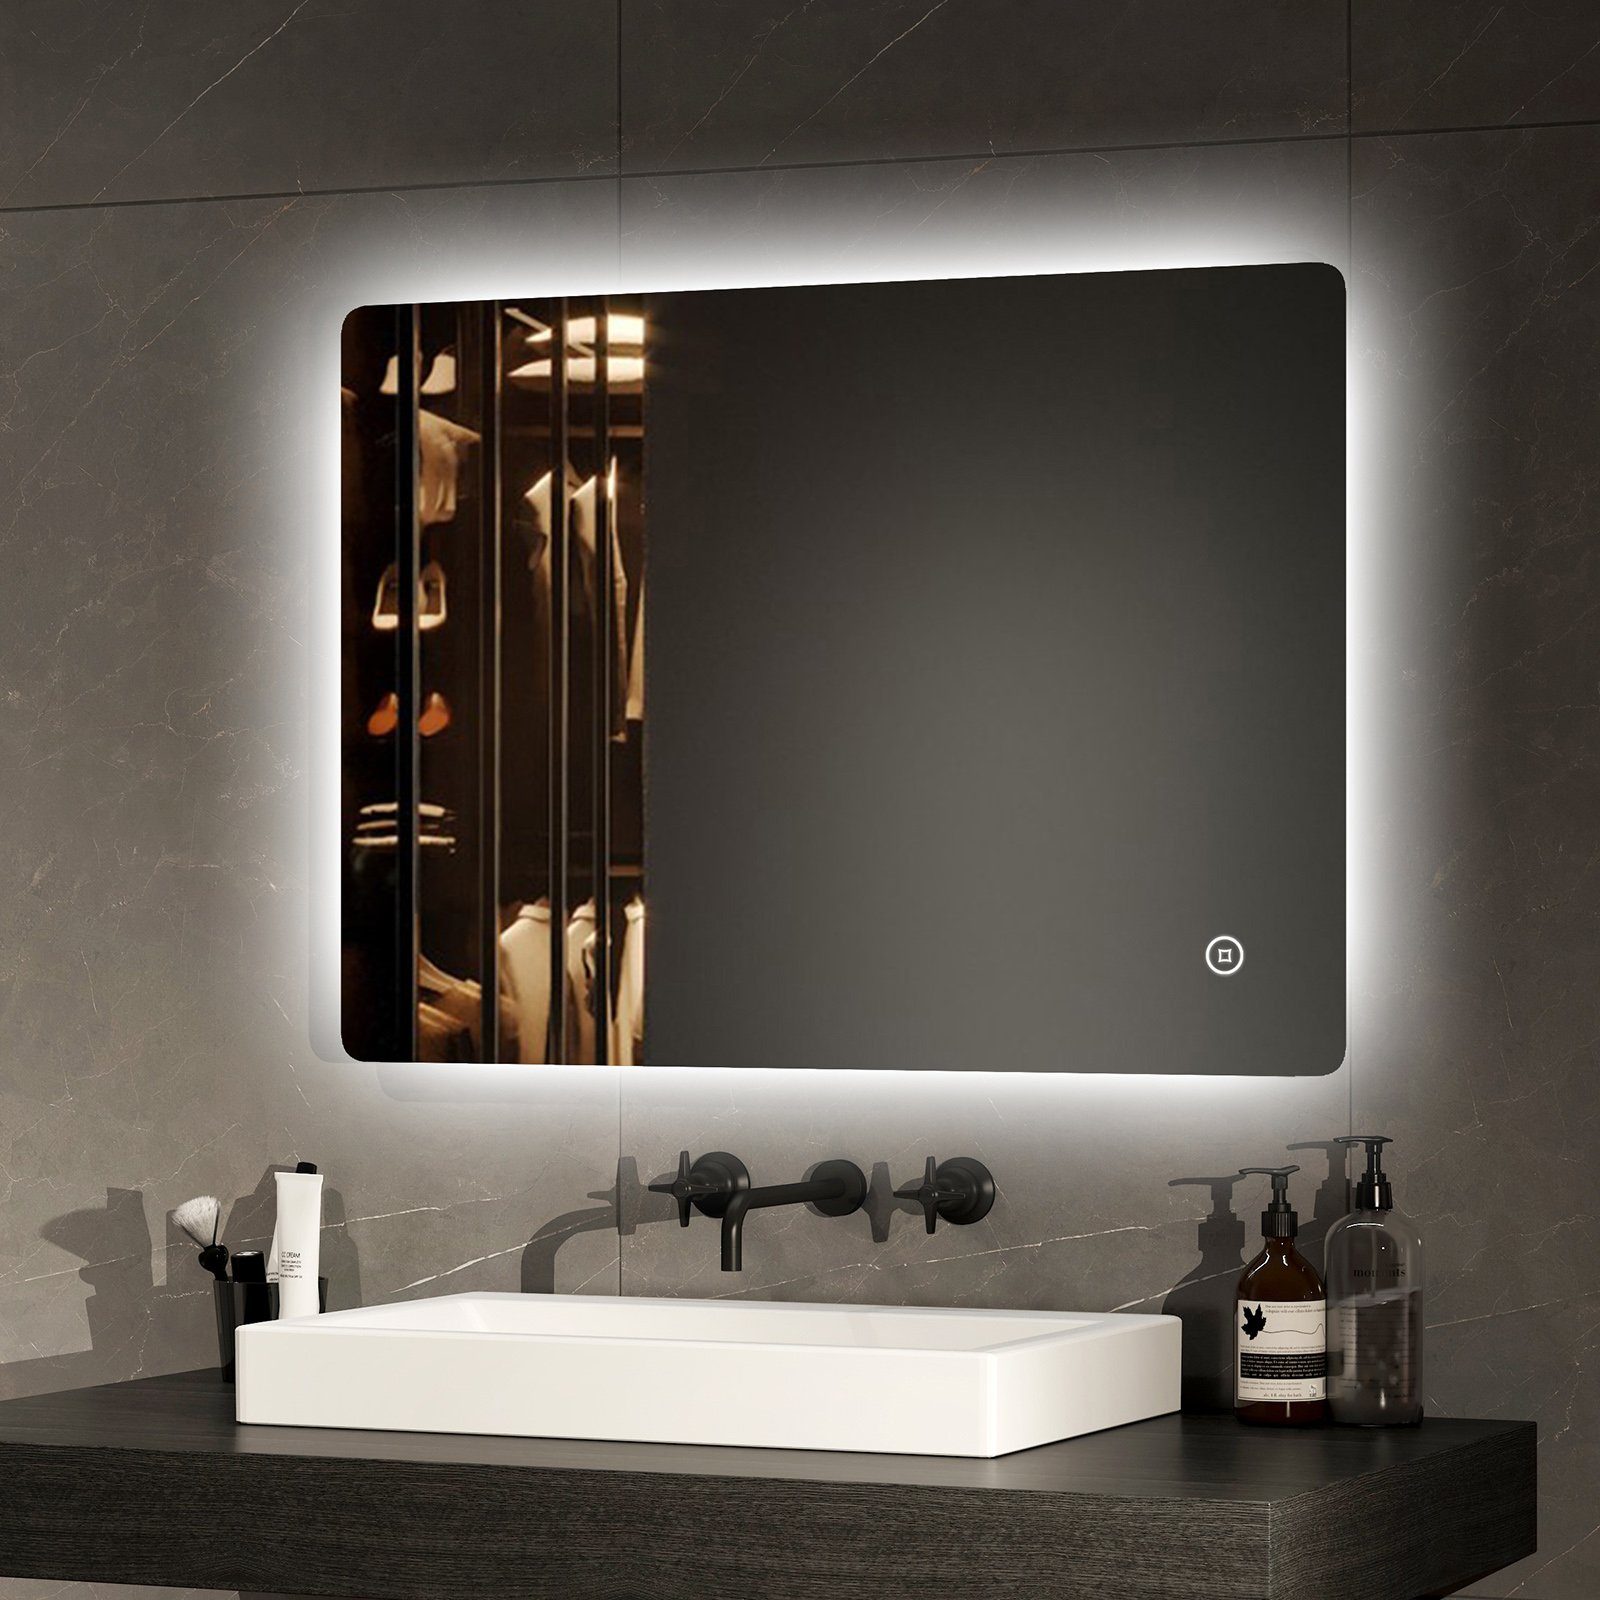 EMKE Badspiegel LED Beleuchtung mit Antibeschlag Rahmenloser Badezimmerspiegel (Modell 09, Vertikal und Horizontal möglich), Wandspiegel mit Beleuchtung und Touch-Schalter Dimmbar IP44